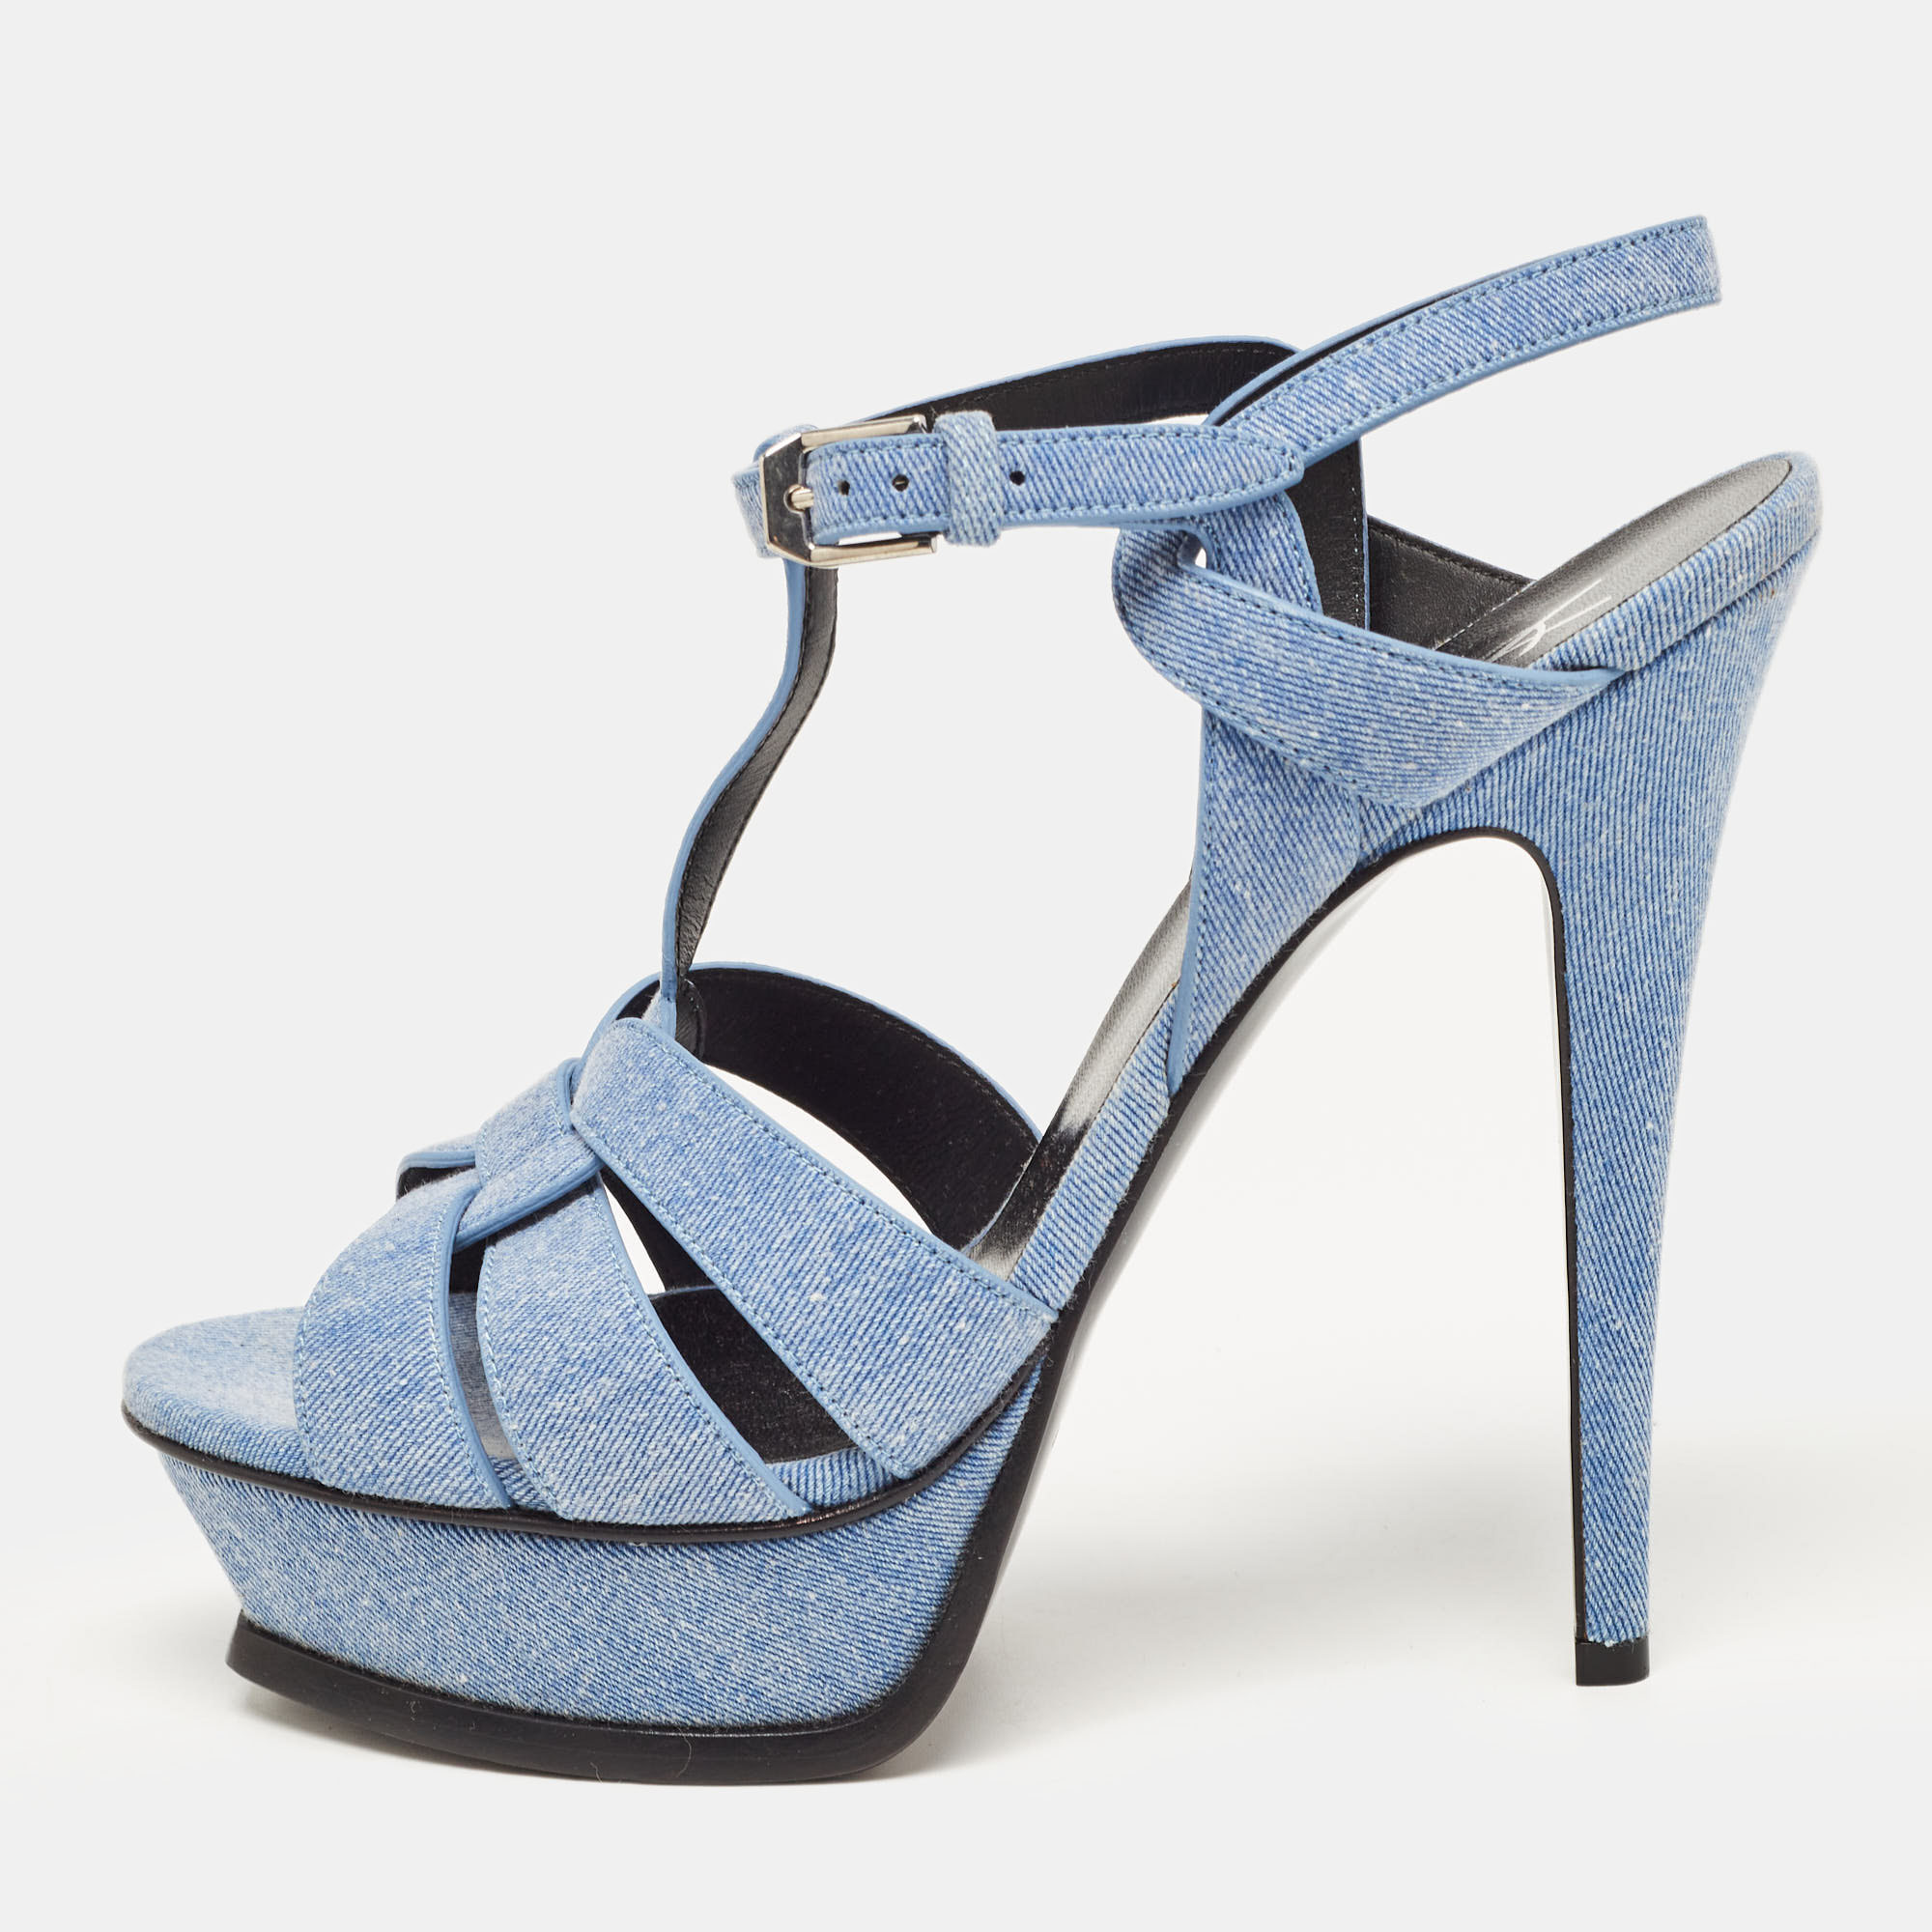 Yves saint laurent blue denim tribute ankle strap sandals size 39